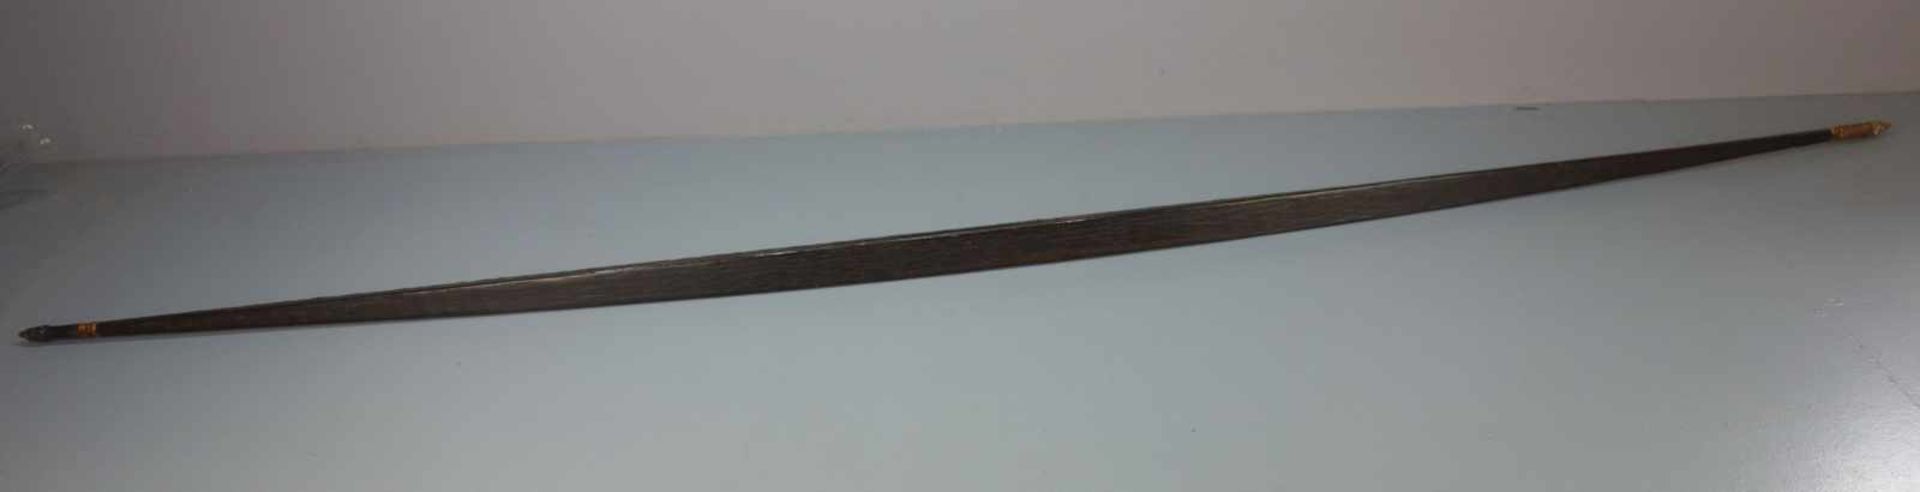 BOGEN / bow, Holz, wohl Papua Neuguinea, 20. Jh.; Bogenrücken braun gefasst, Bogenbauch lasiert. - Bild 3 aus 5